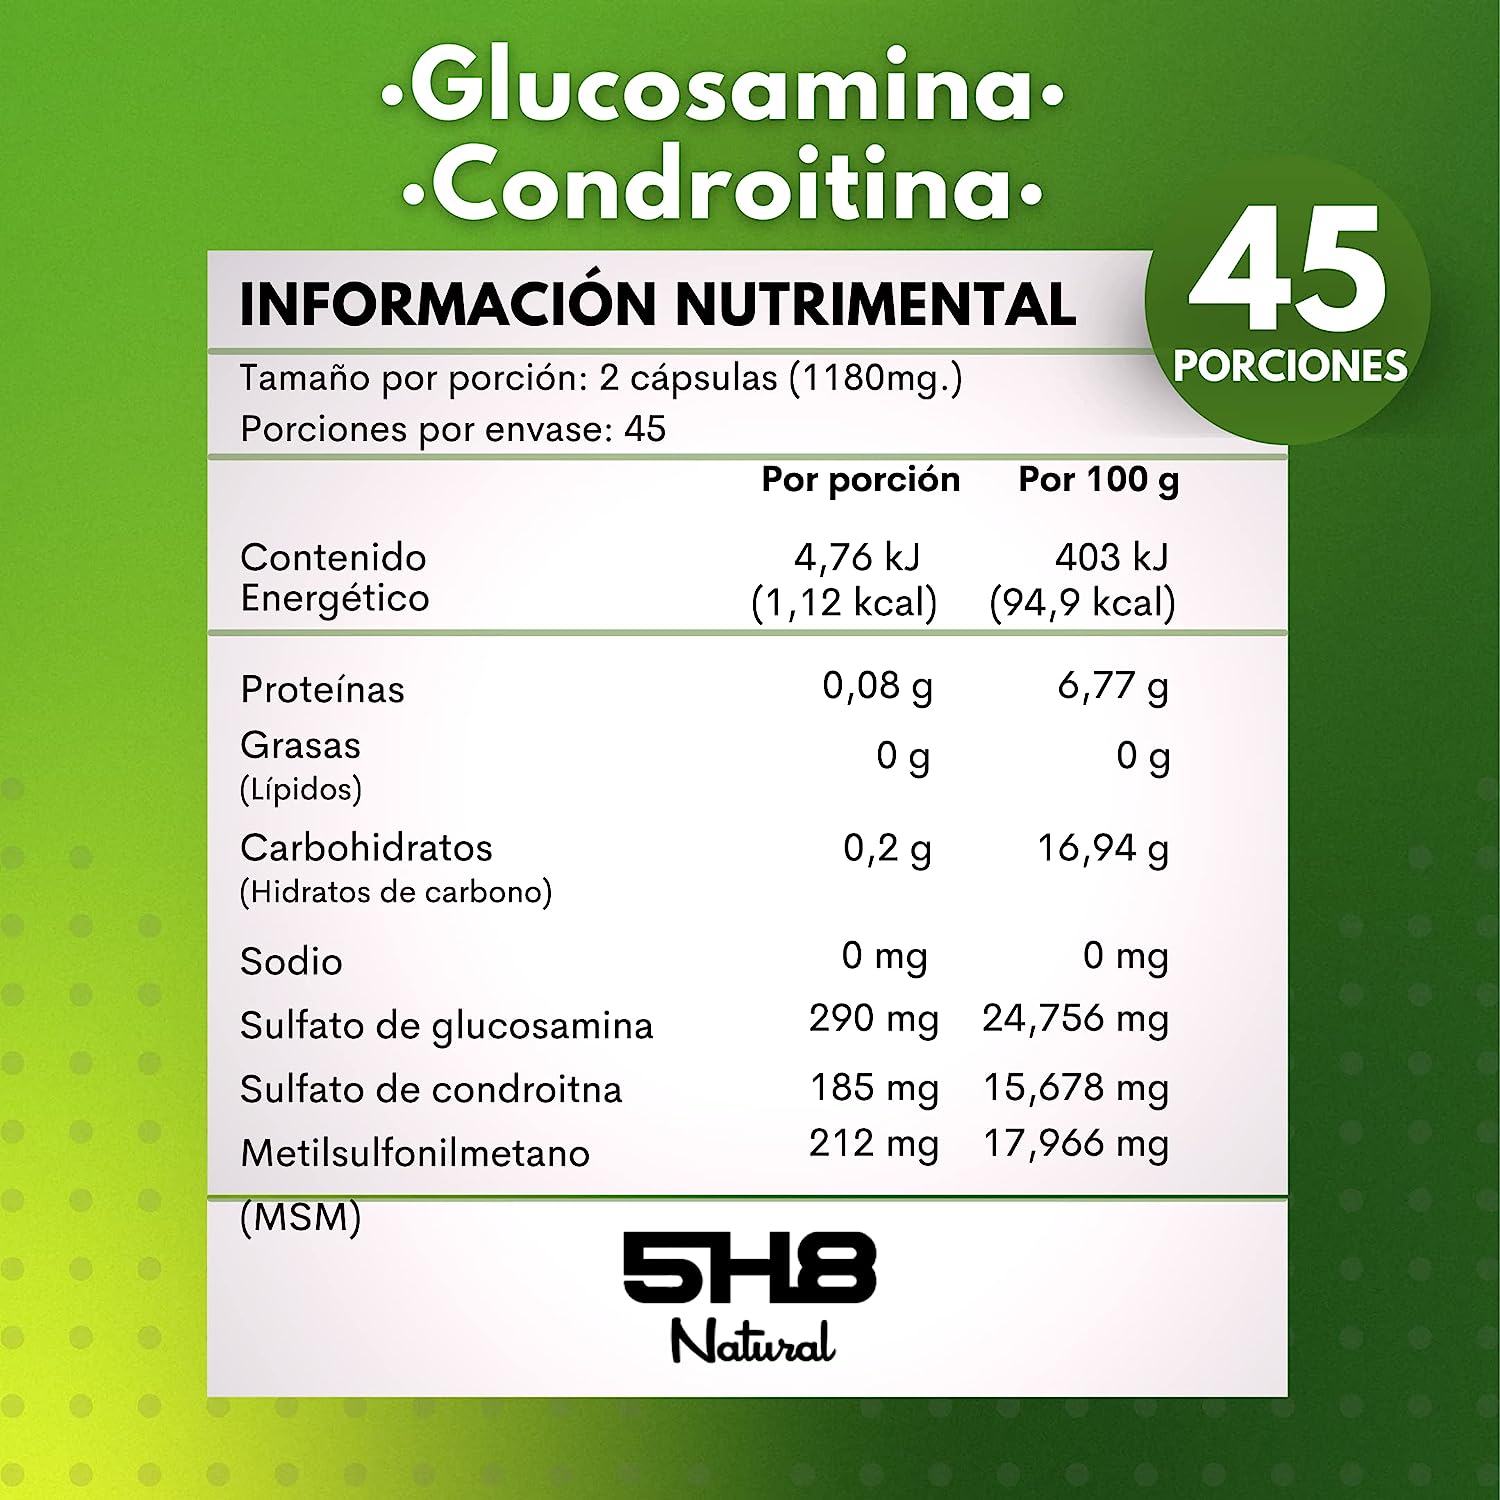 GLUCOSAMINA + CONDROITINA + MSM